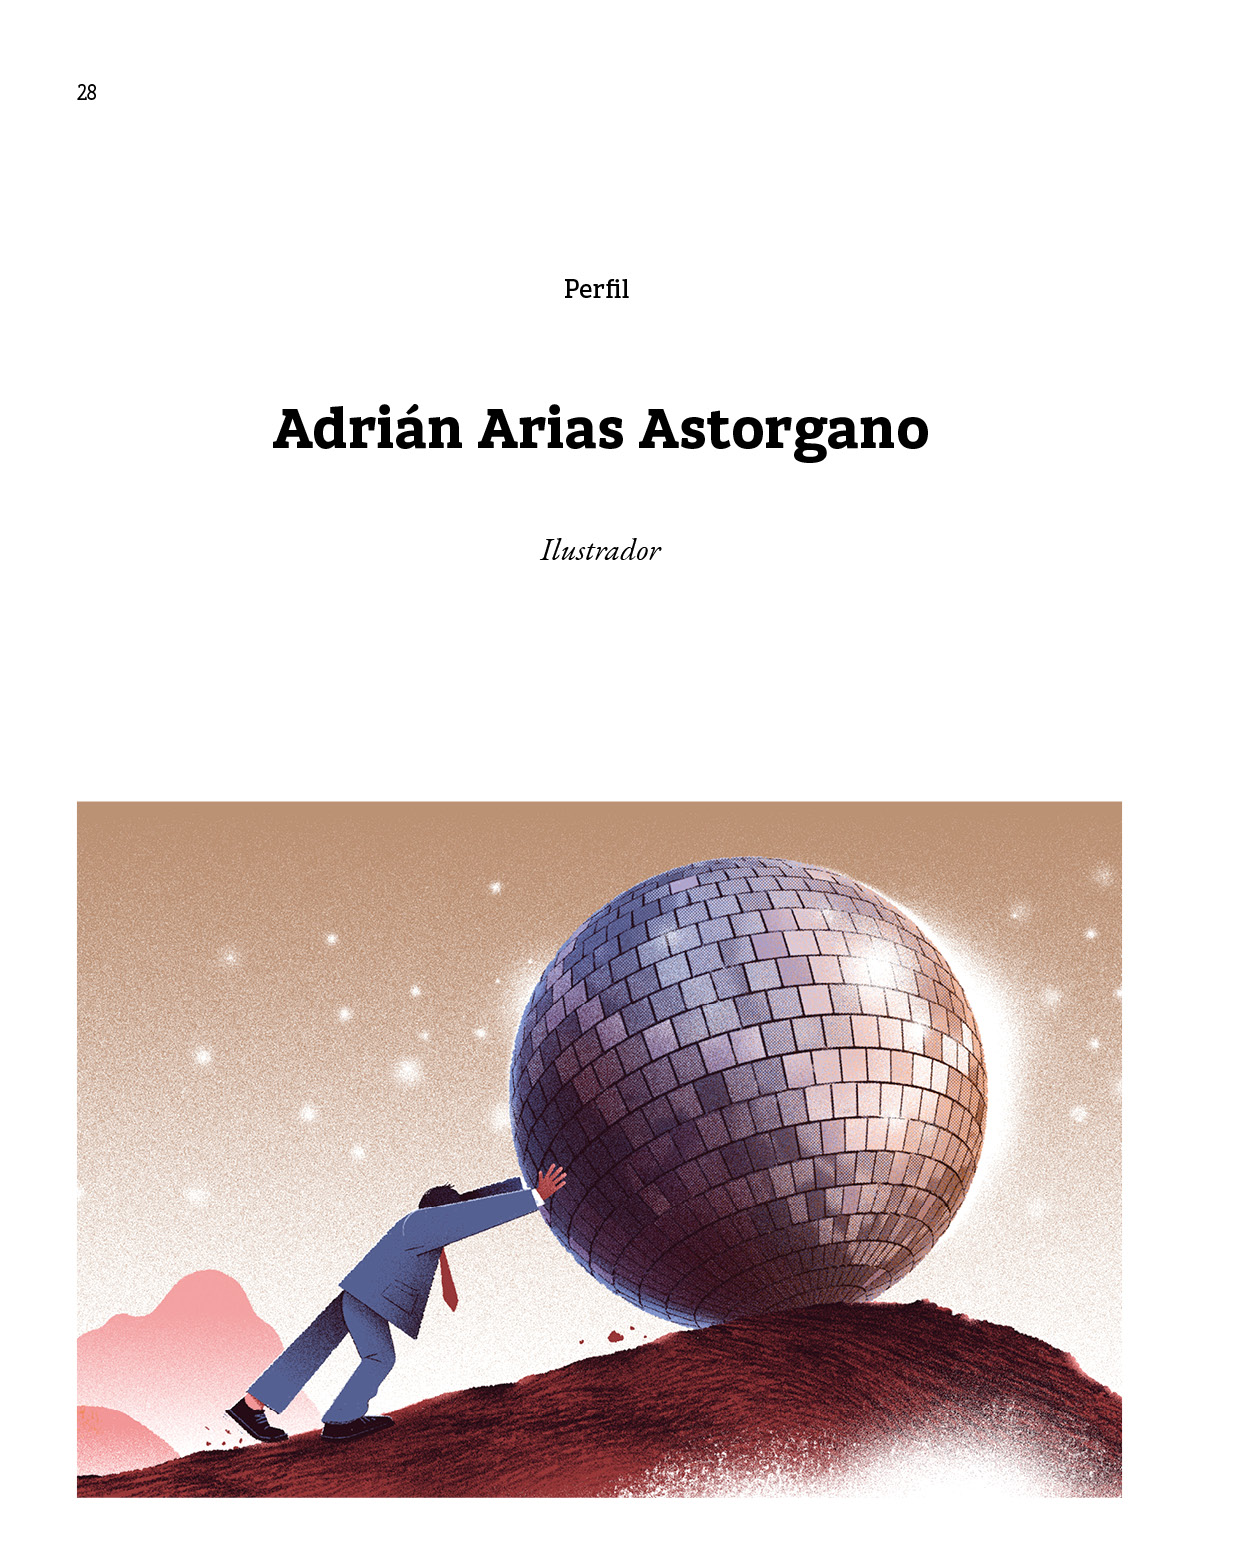 Perfil Adrián Arias Astorgano